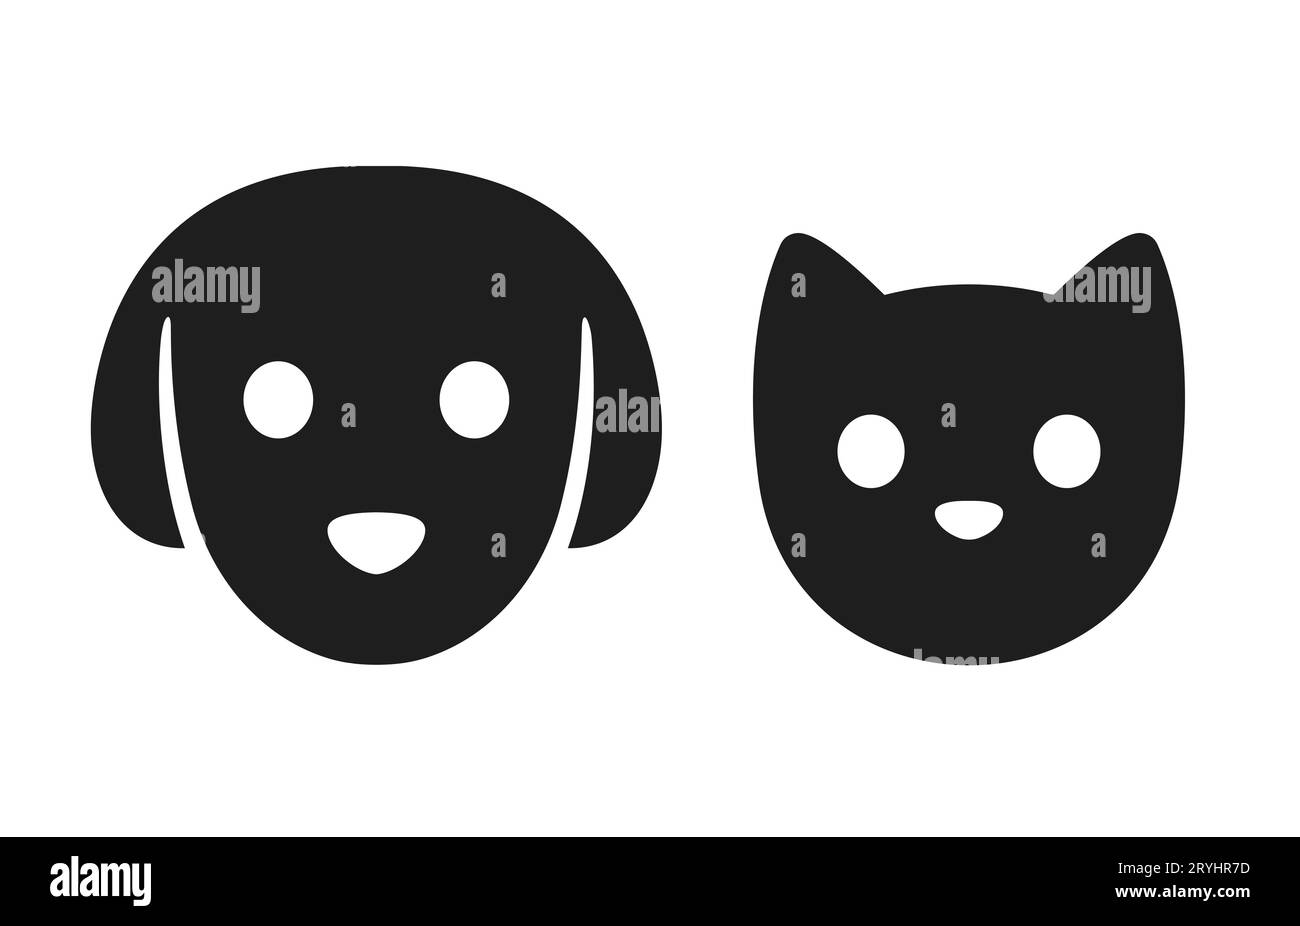 Icona della testa del gatto e del cane. Semplice pittogramma stilizzato per il volto di un animale domestico, silhouette nera con occhi e naso. Insieme di illustrazioni vettoriali. Illustrazione Vettoriale